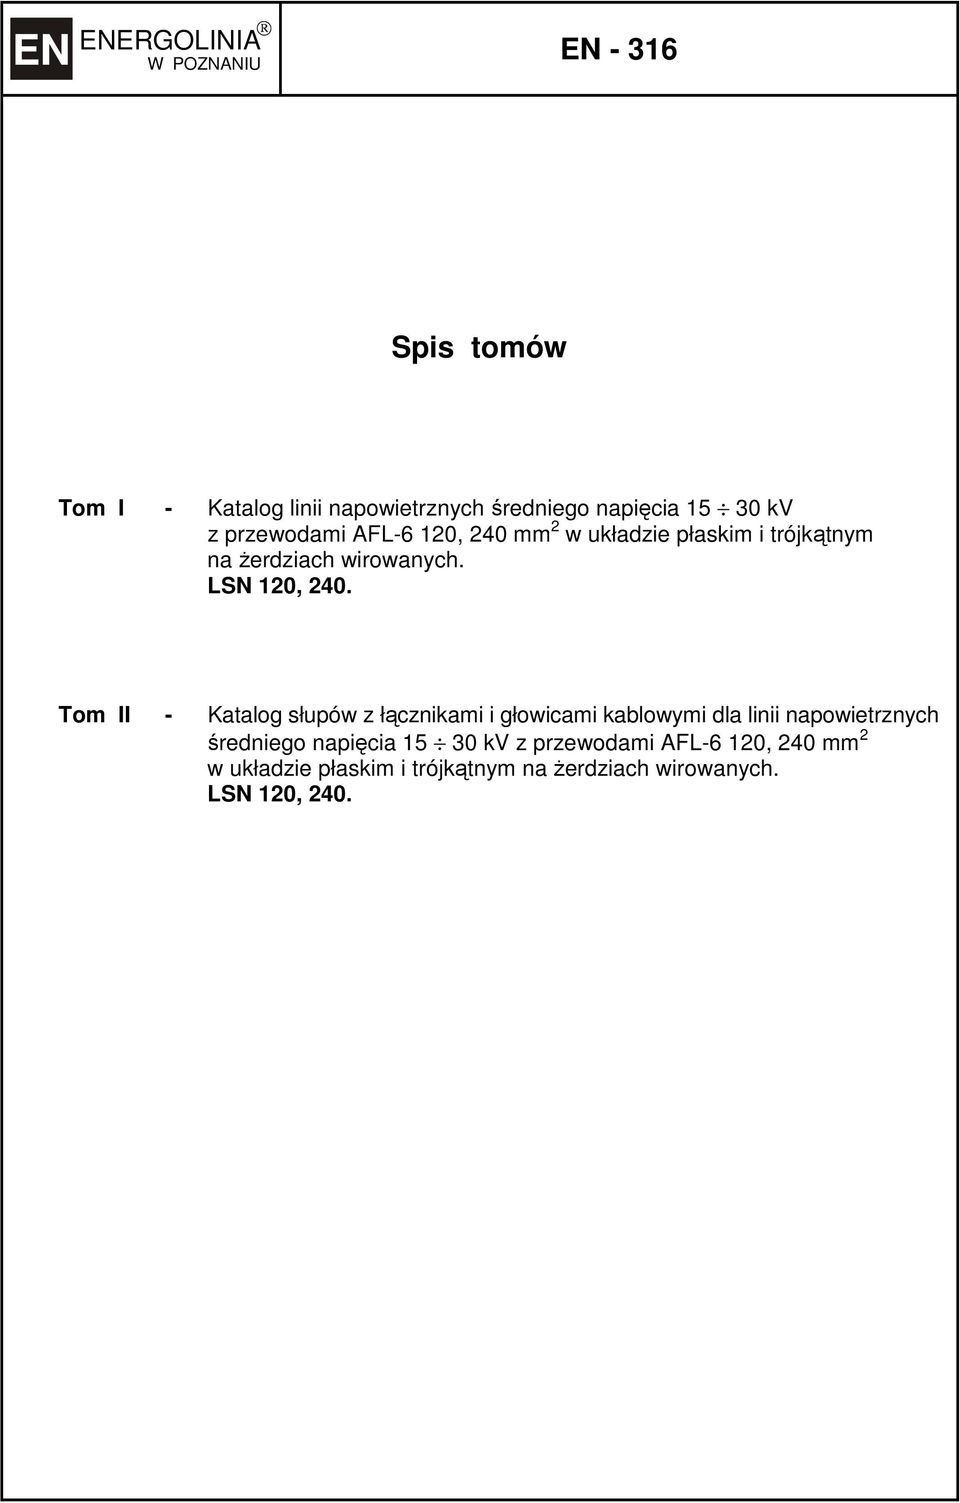 Tom II - Katalog słupów z łącznikami i głowicami kablowymi dla linii napowietrznych średniego